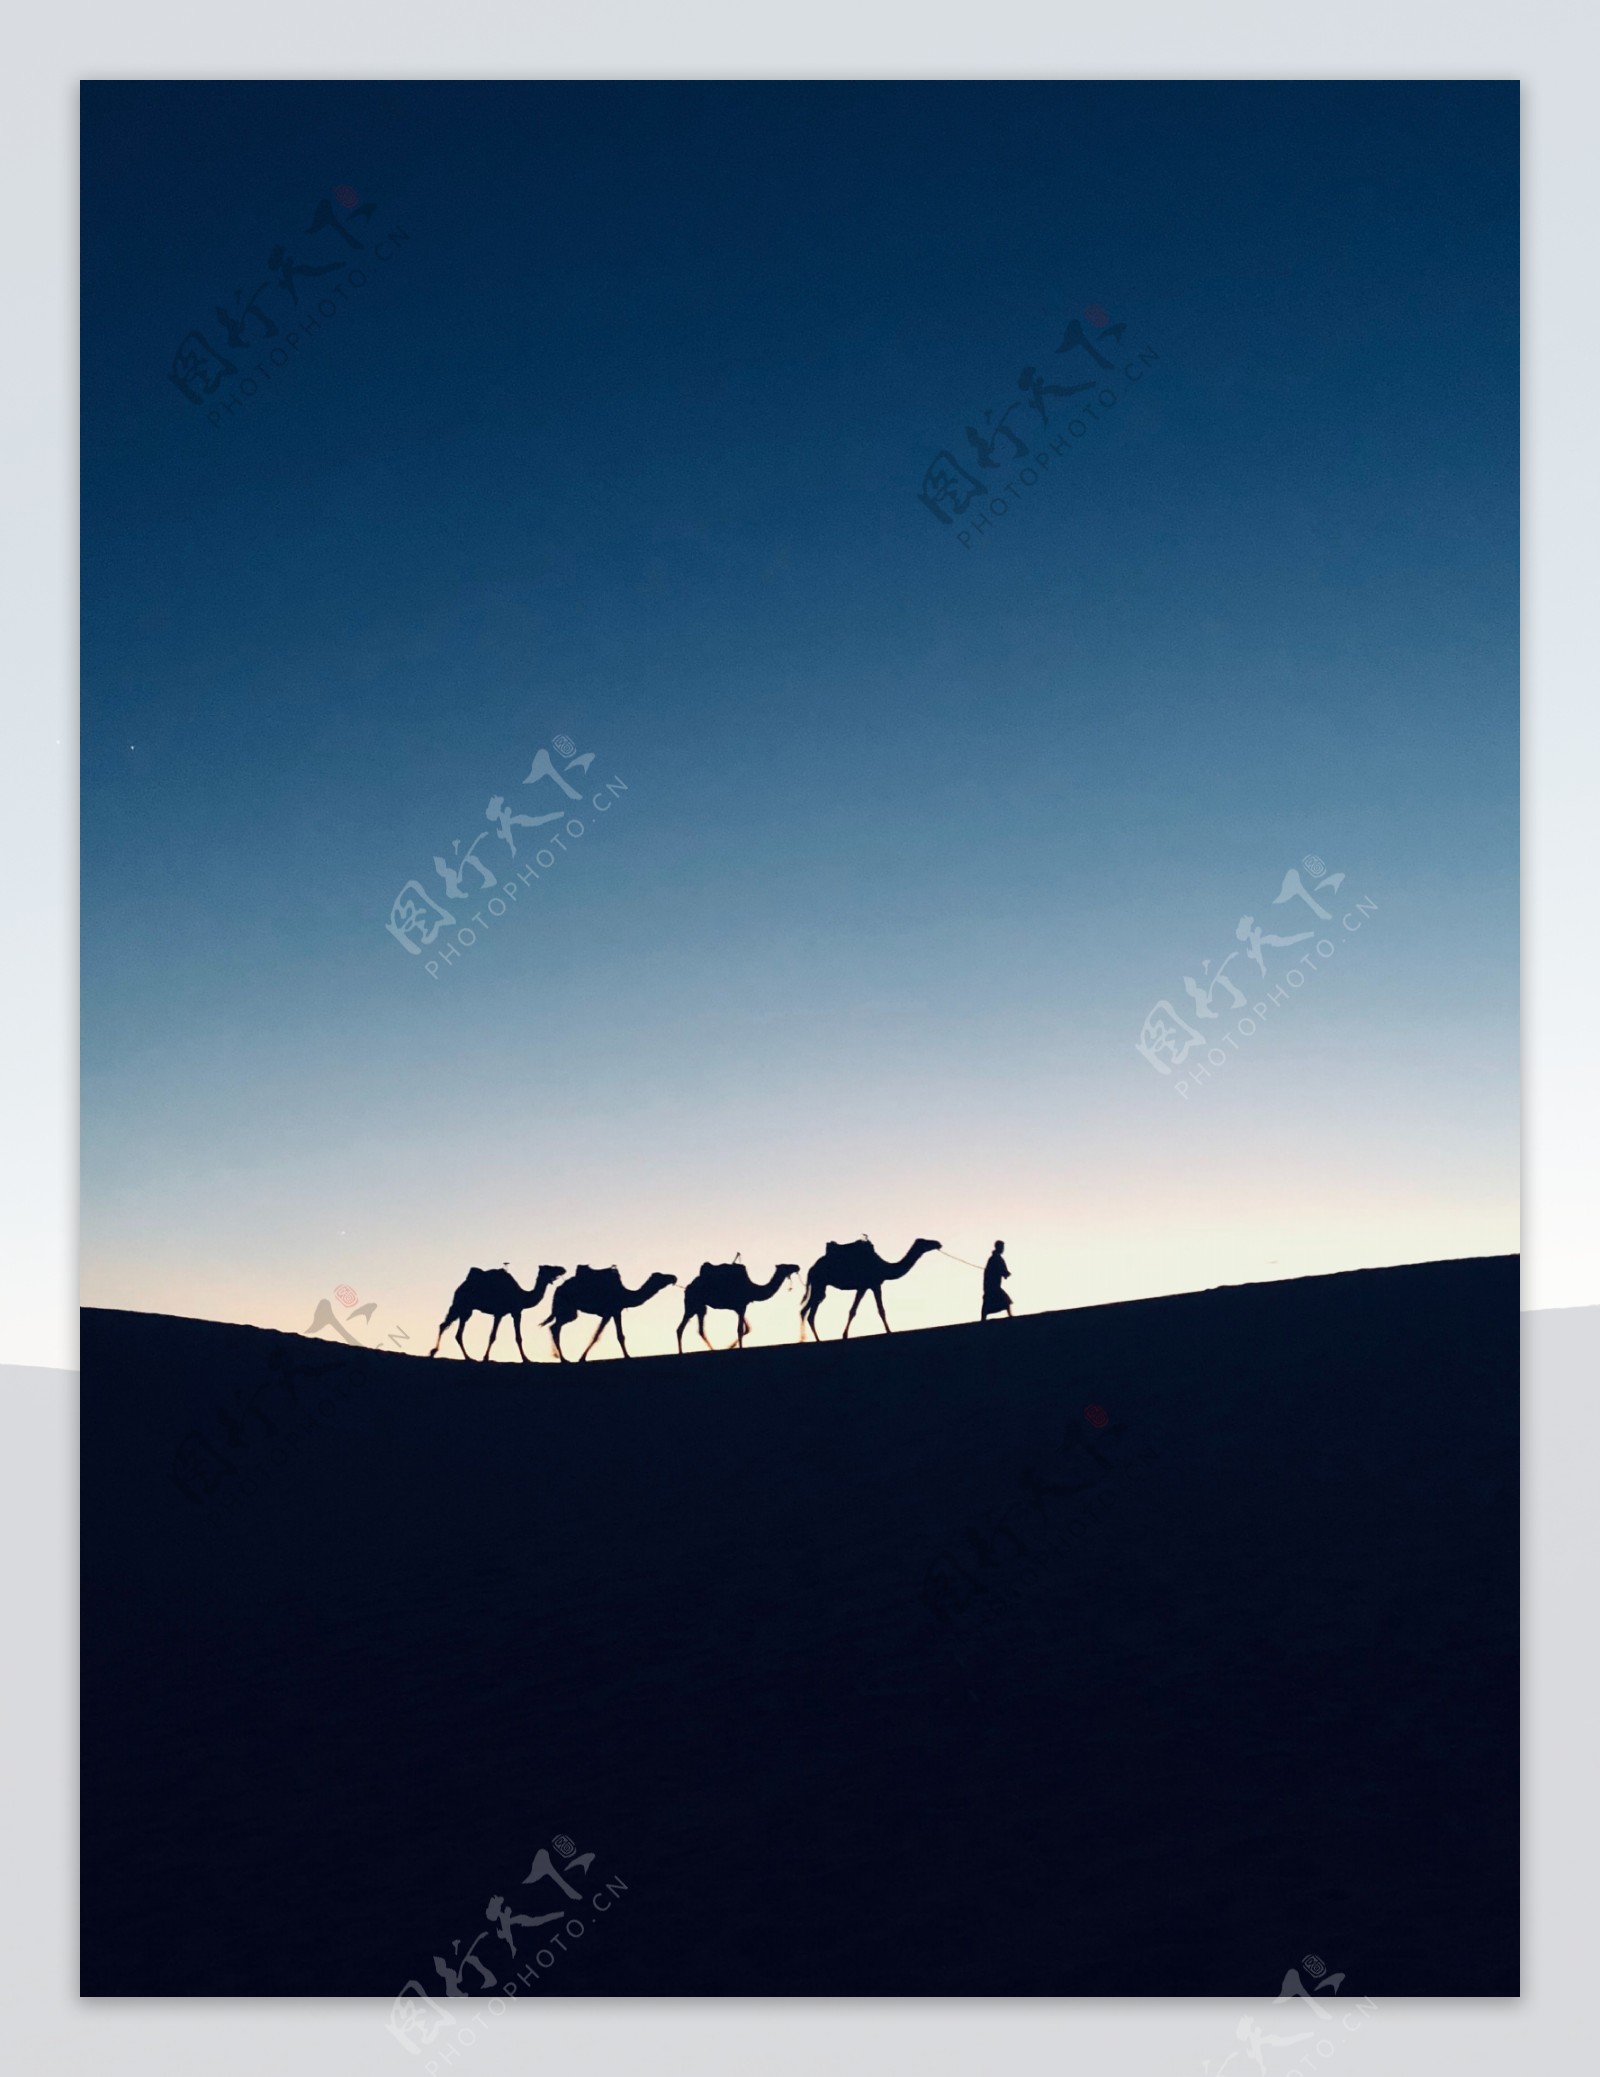 即将日出沙漠中行走的骆驼